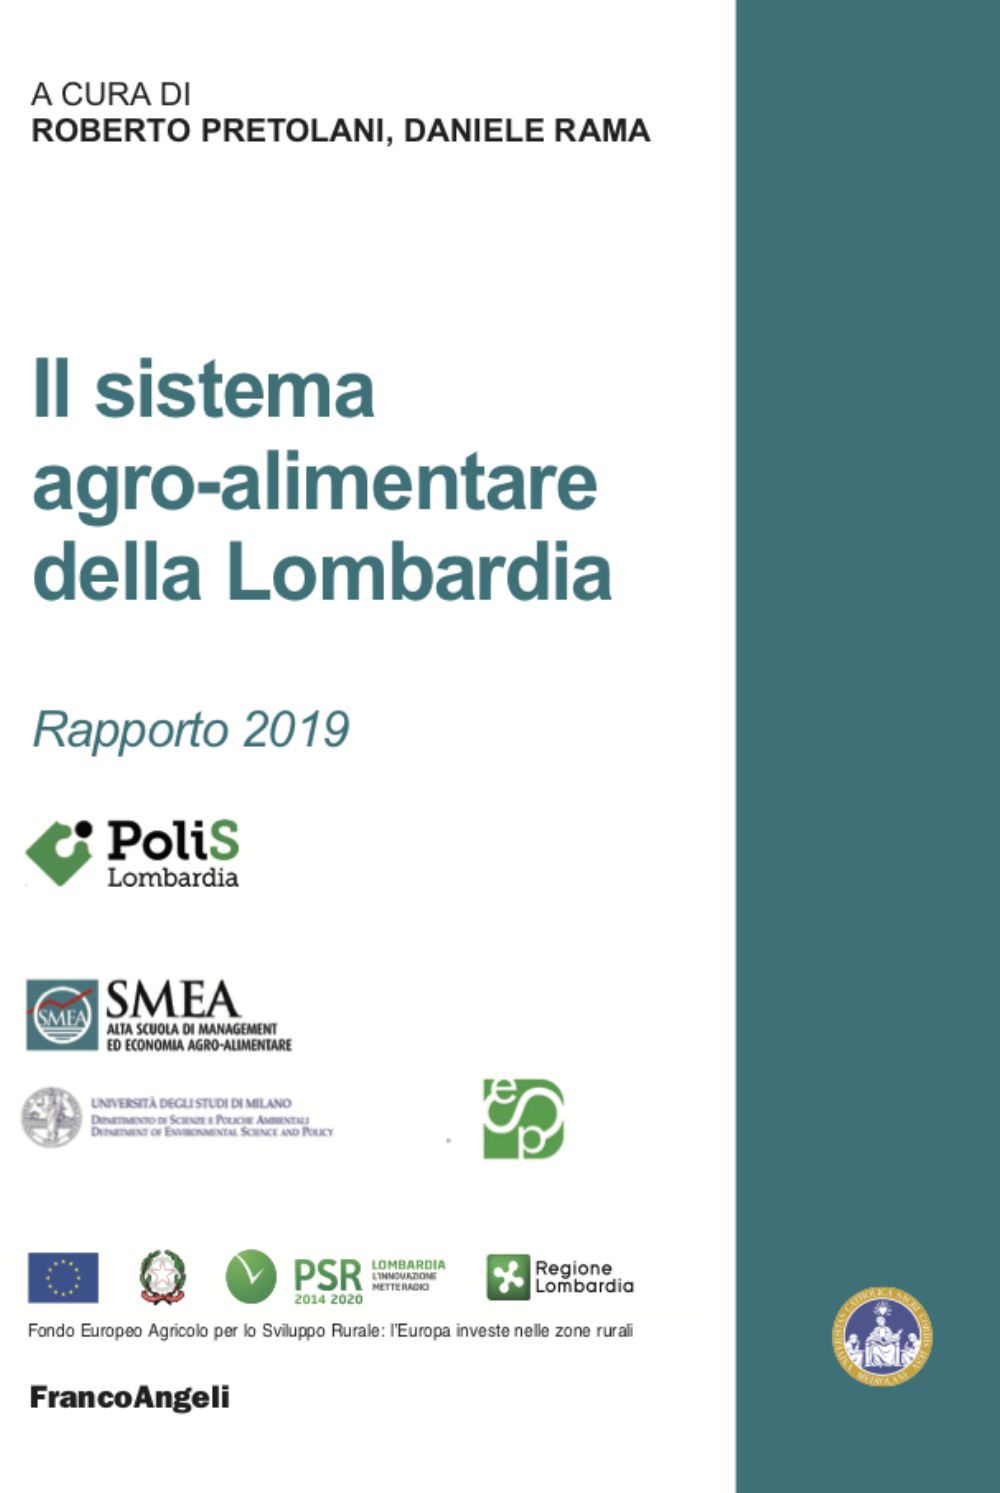 Image of Il sistema agro-alimentare della Lombardia, Rapporto 2019